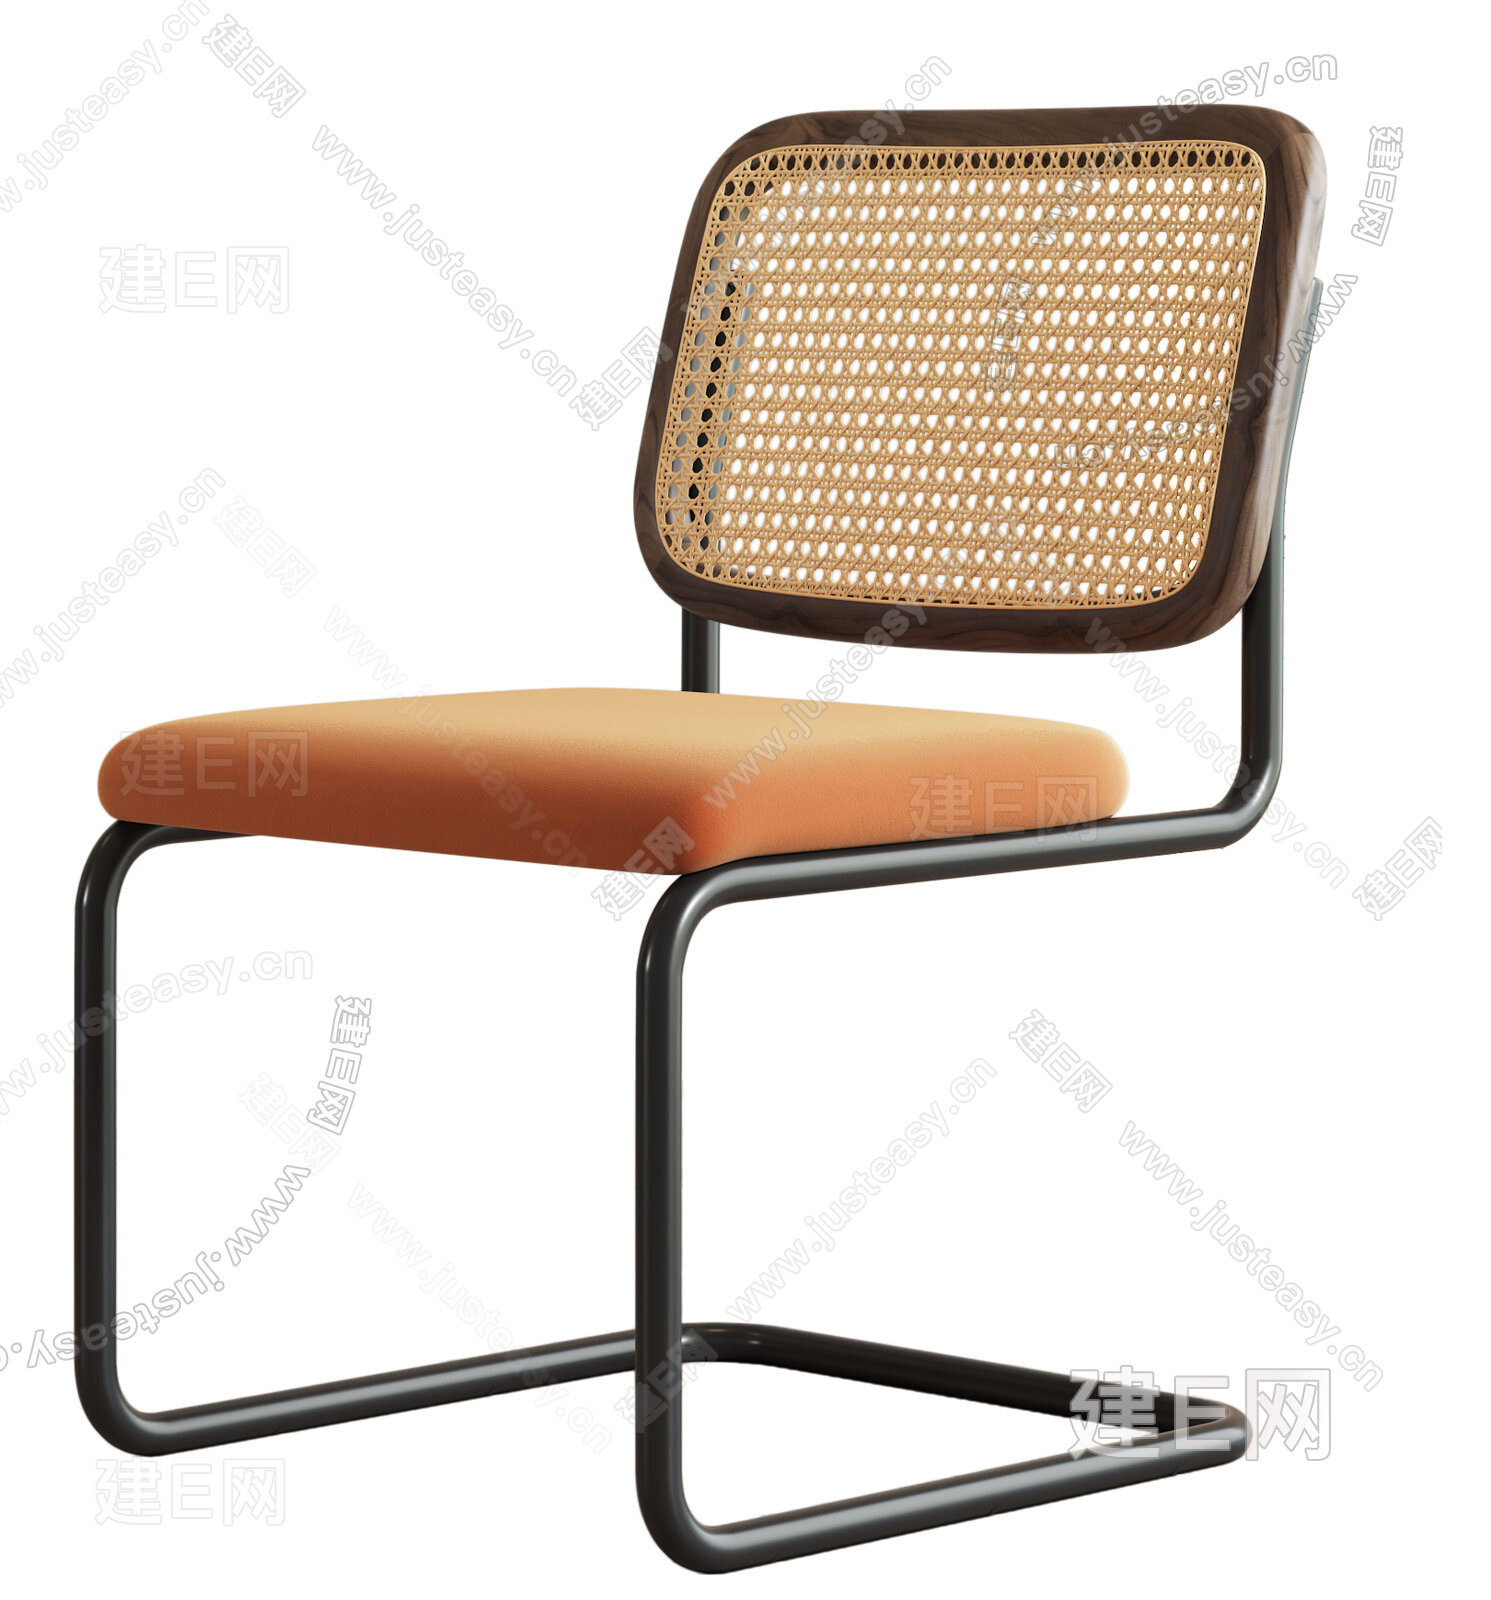 Walter Knoll现代椅子3d模型